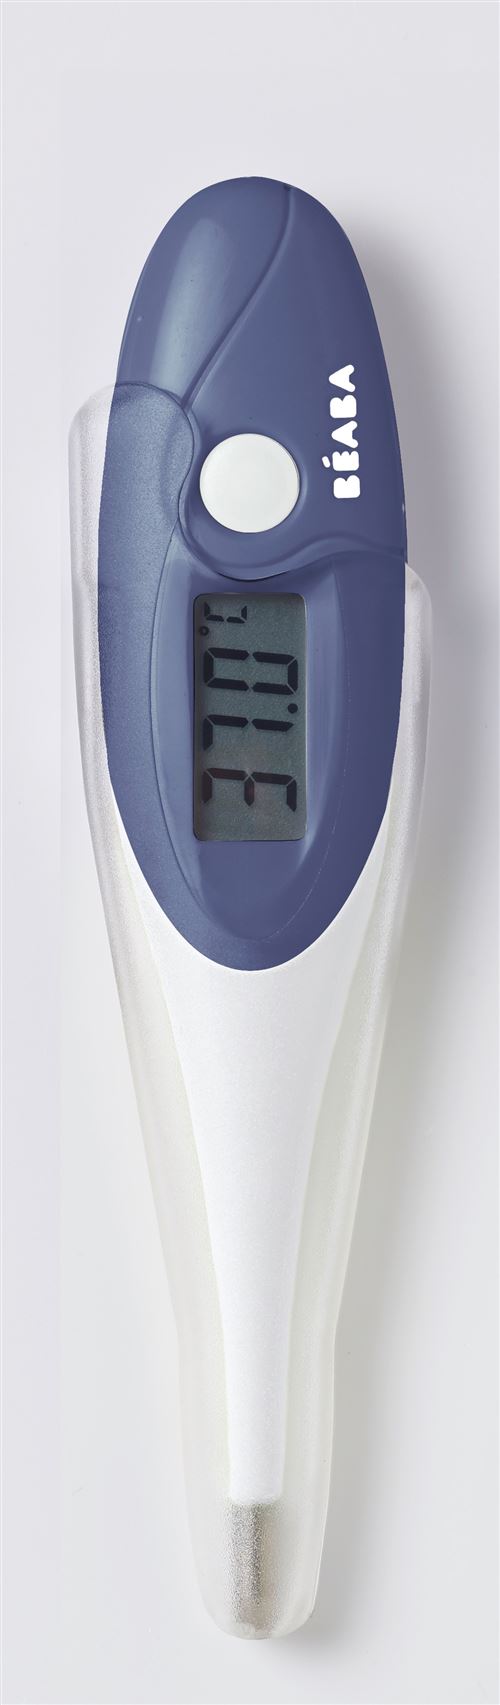 Thermomètre digital bébé à embout souple Thermobip